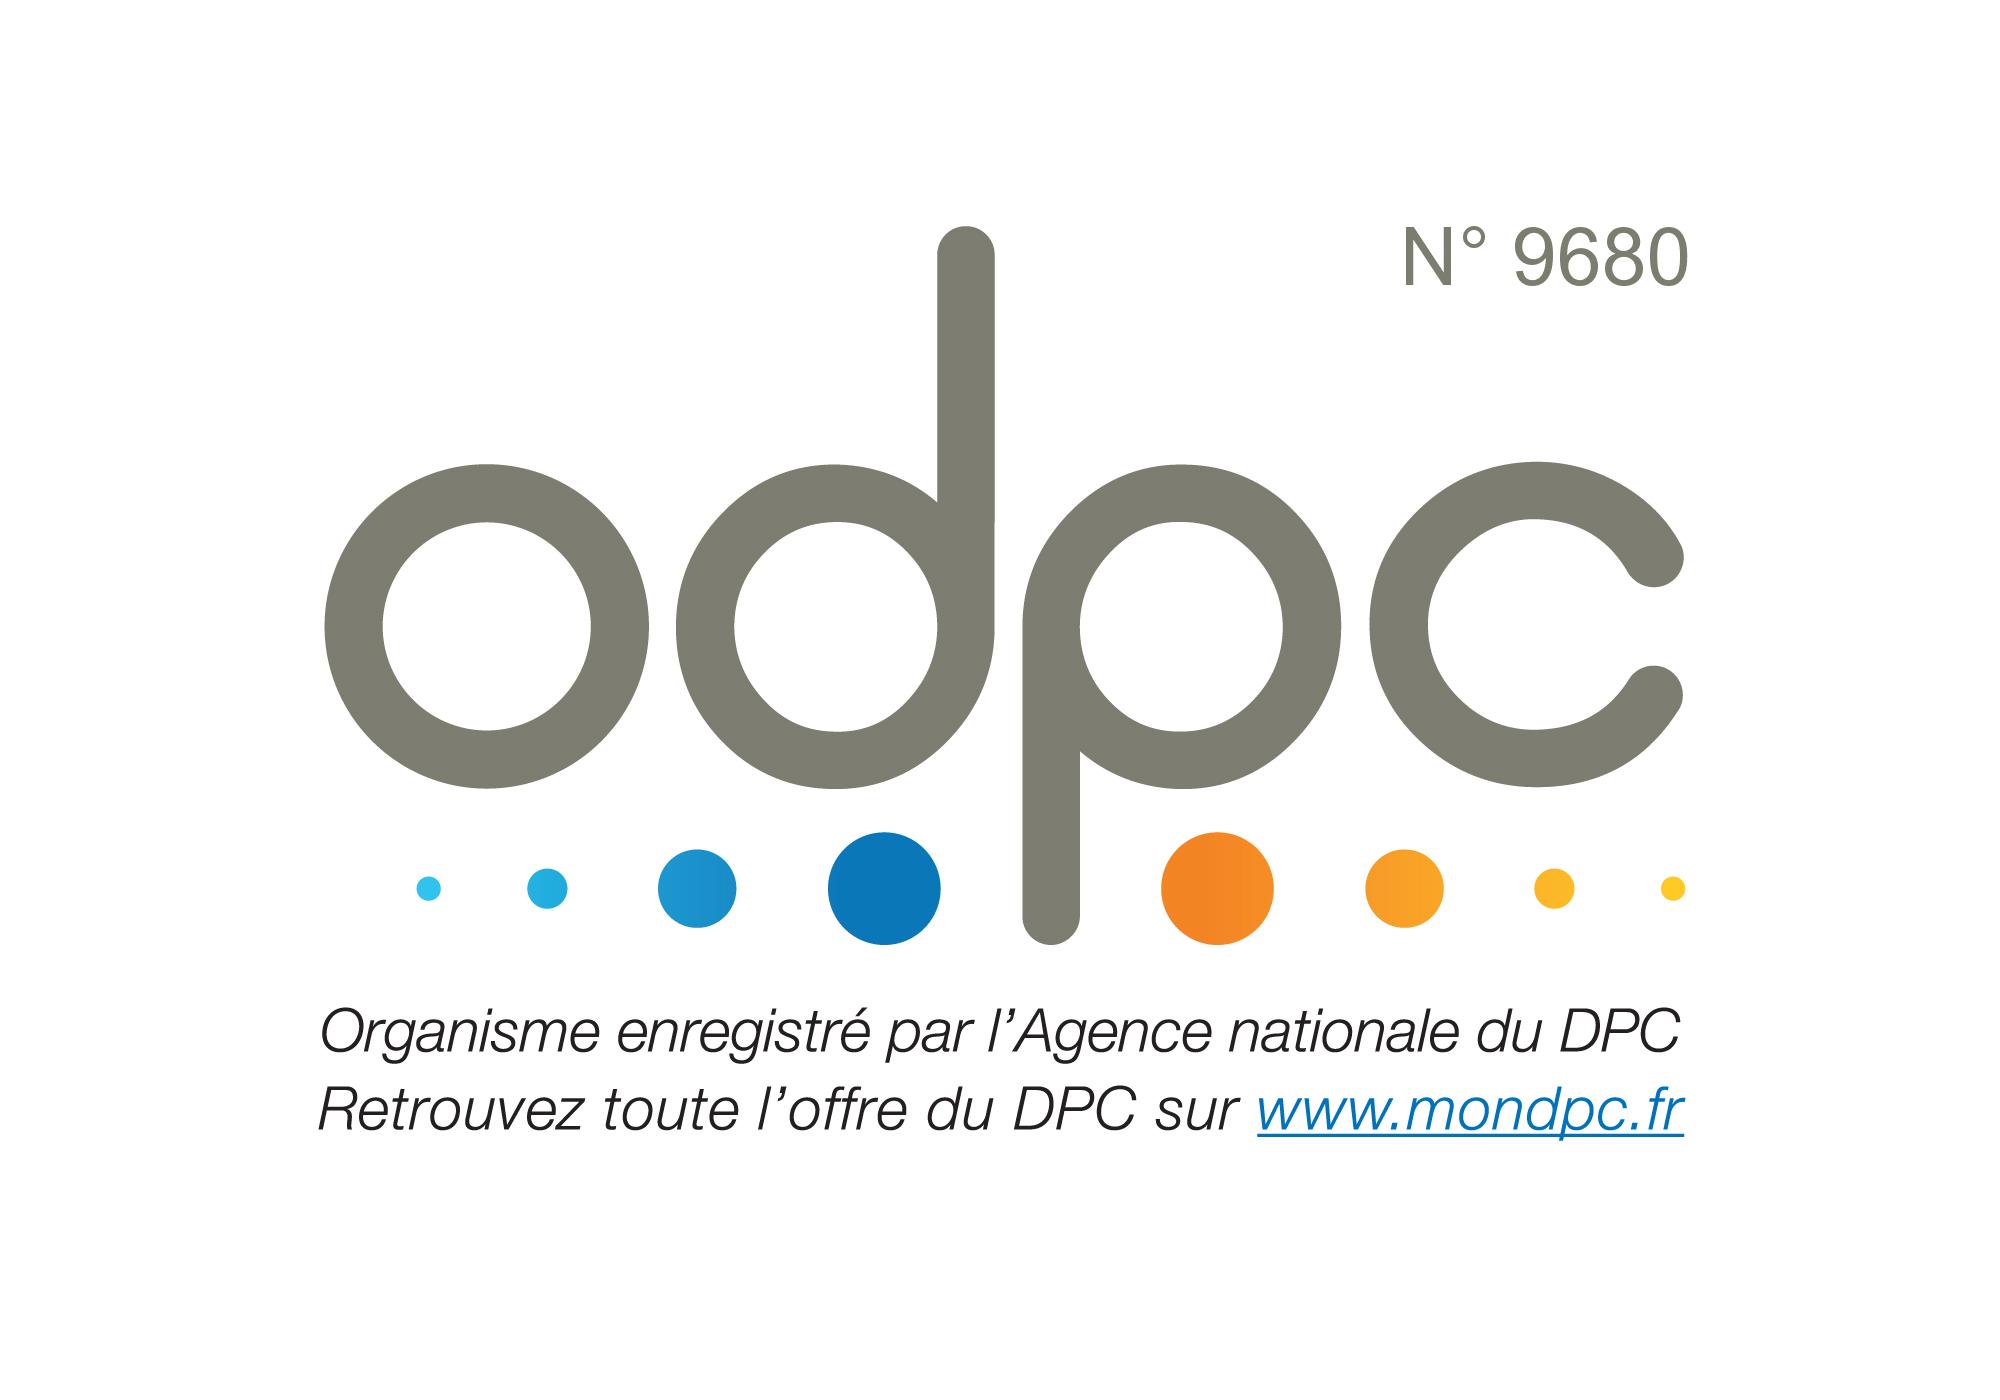 Organisme de formation enregistré par l'Agence nationalle du DPC